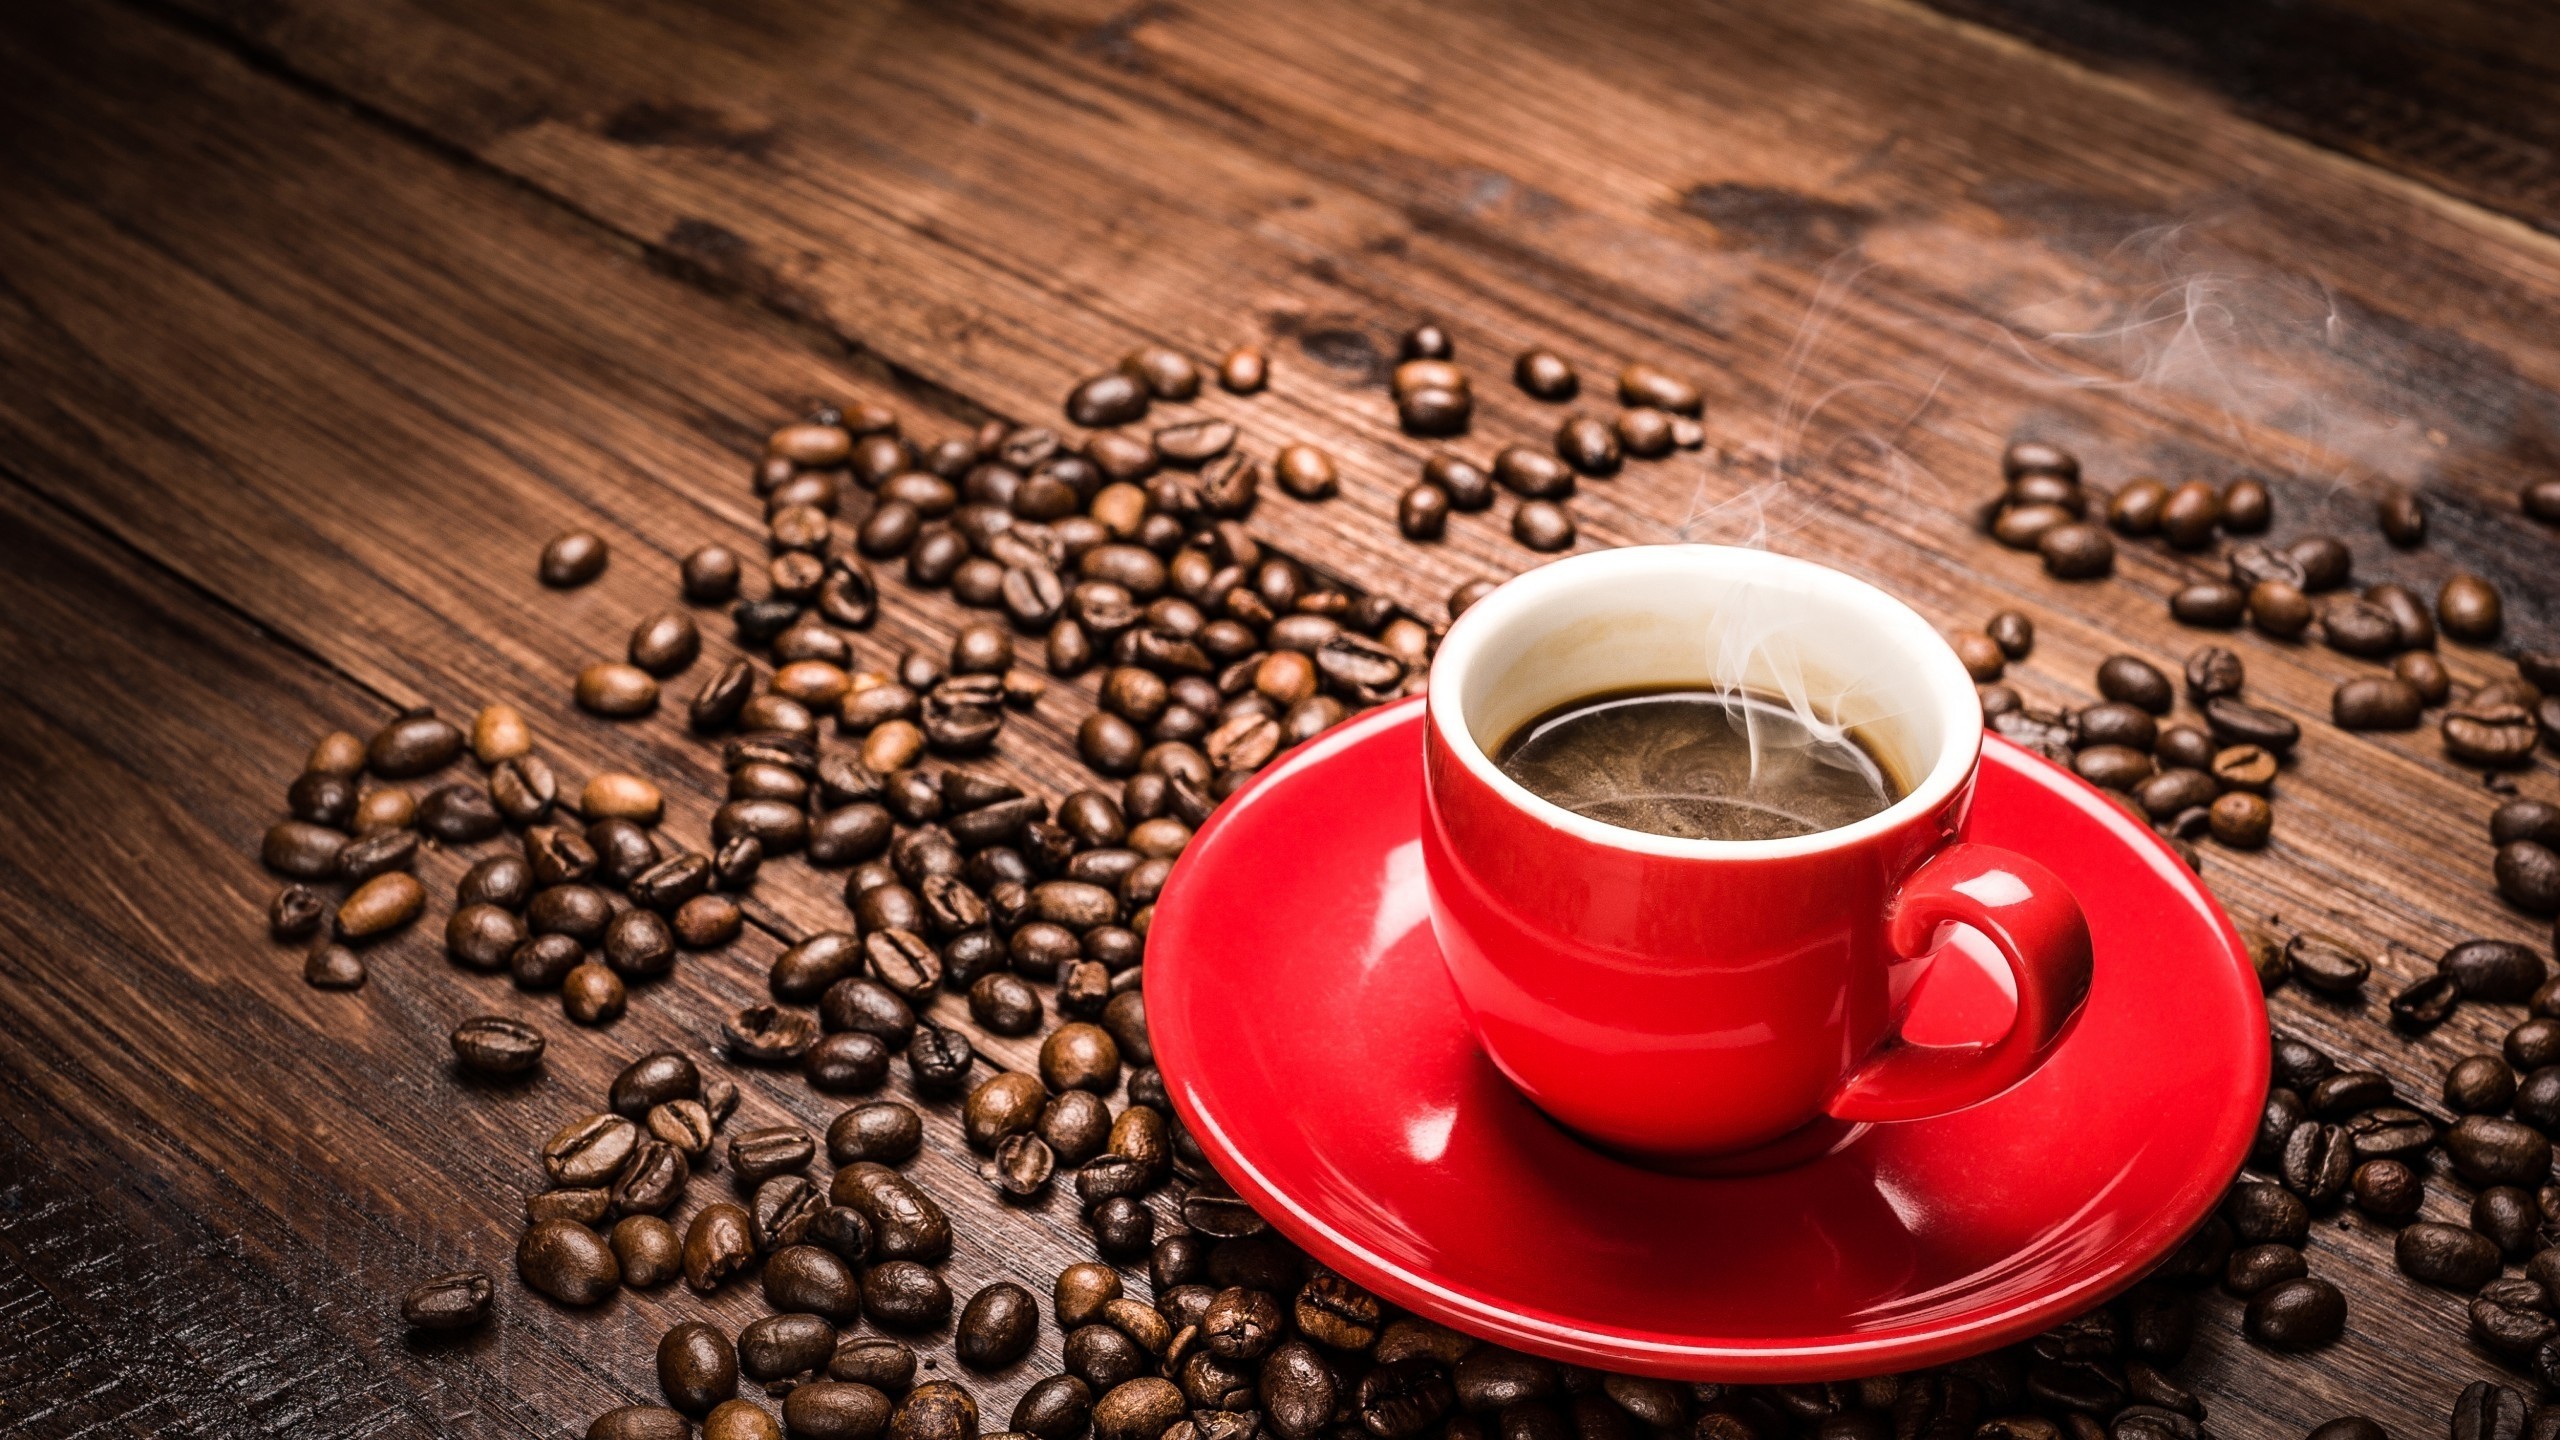 커피 컵 벽지,컵,카페인,커피 컵,단일 원산지 커피,카펑 바라 코